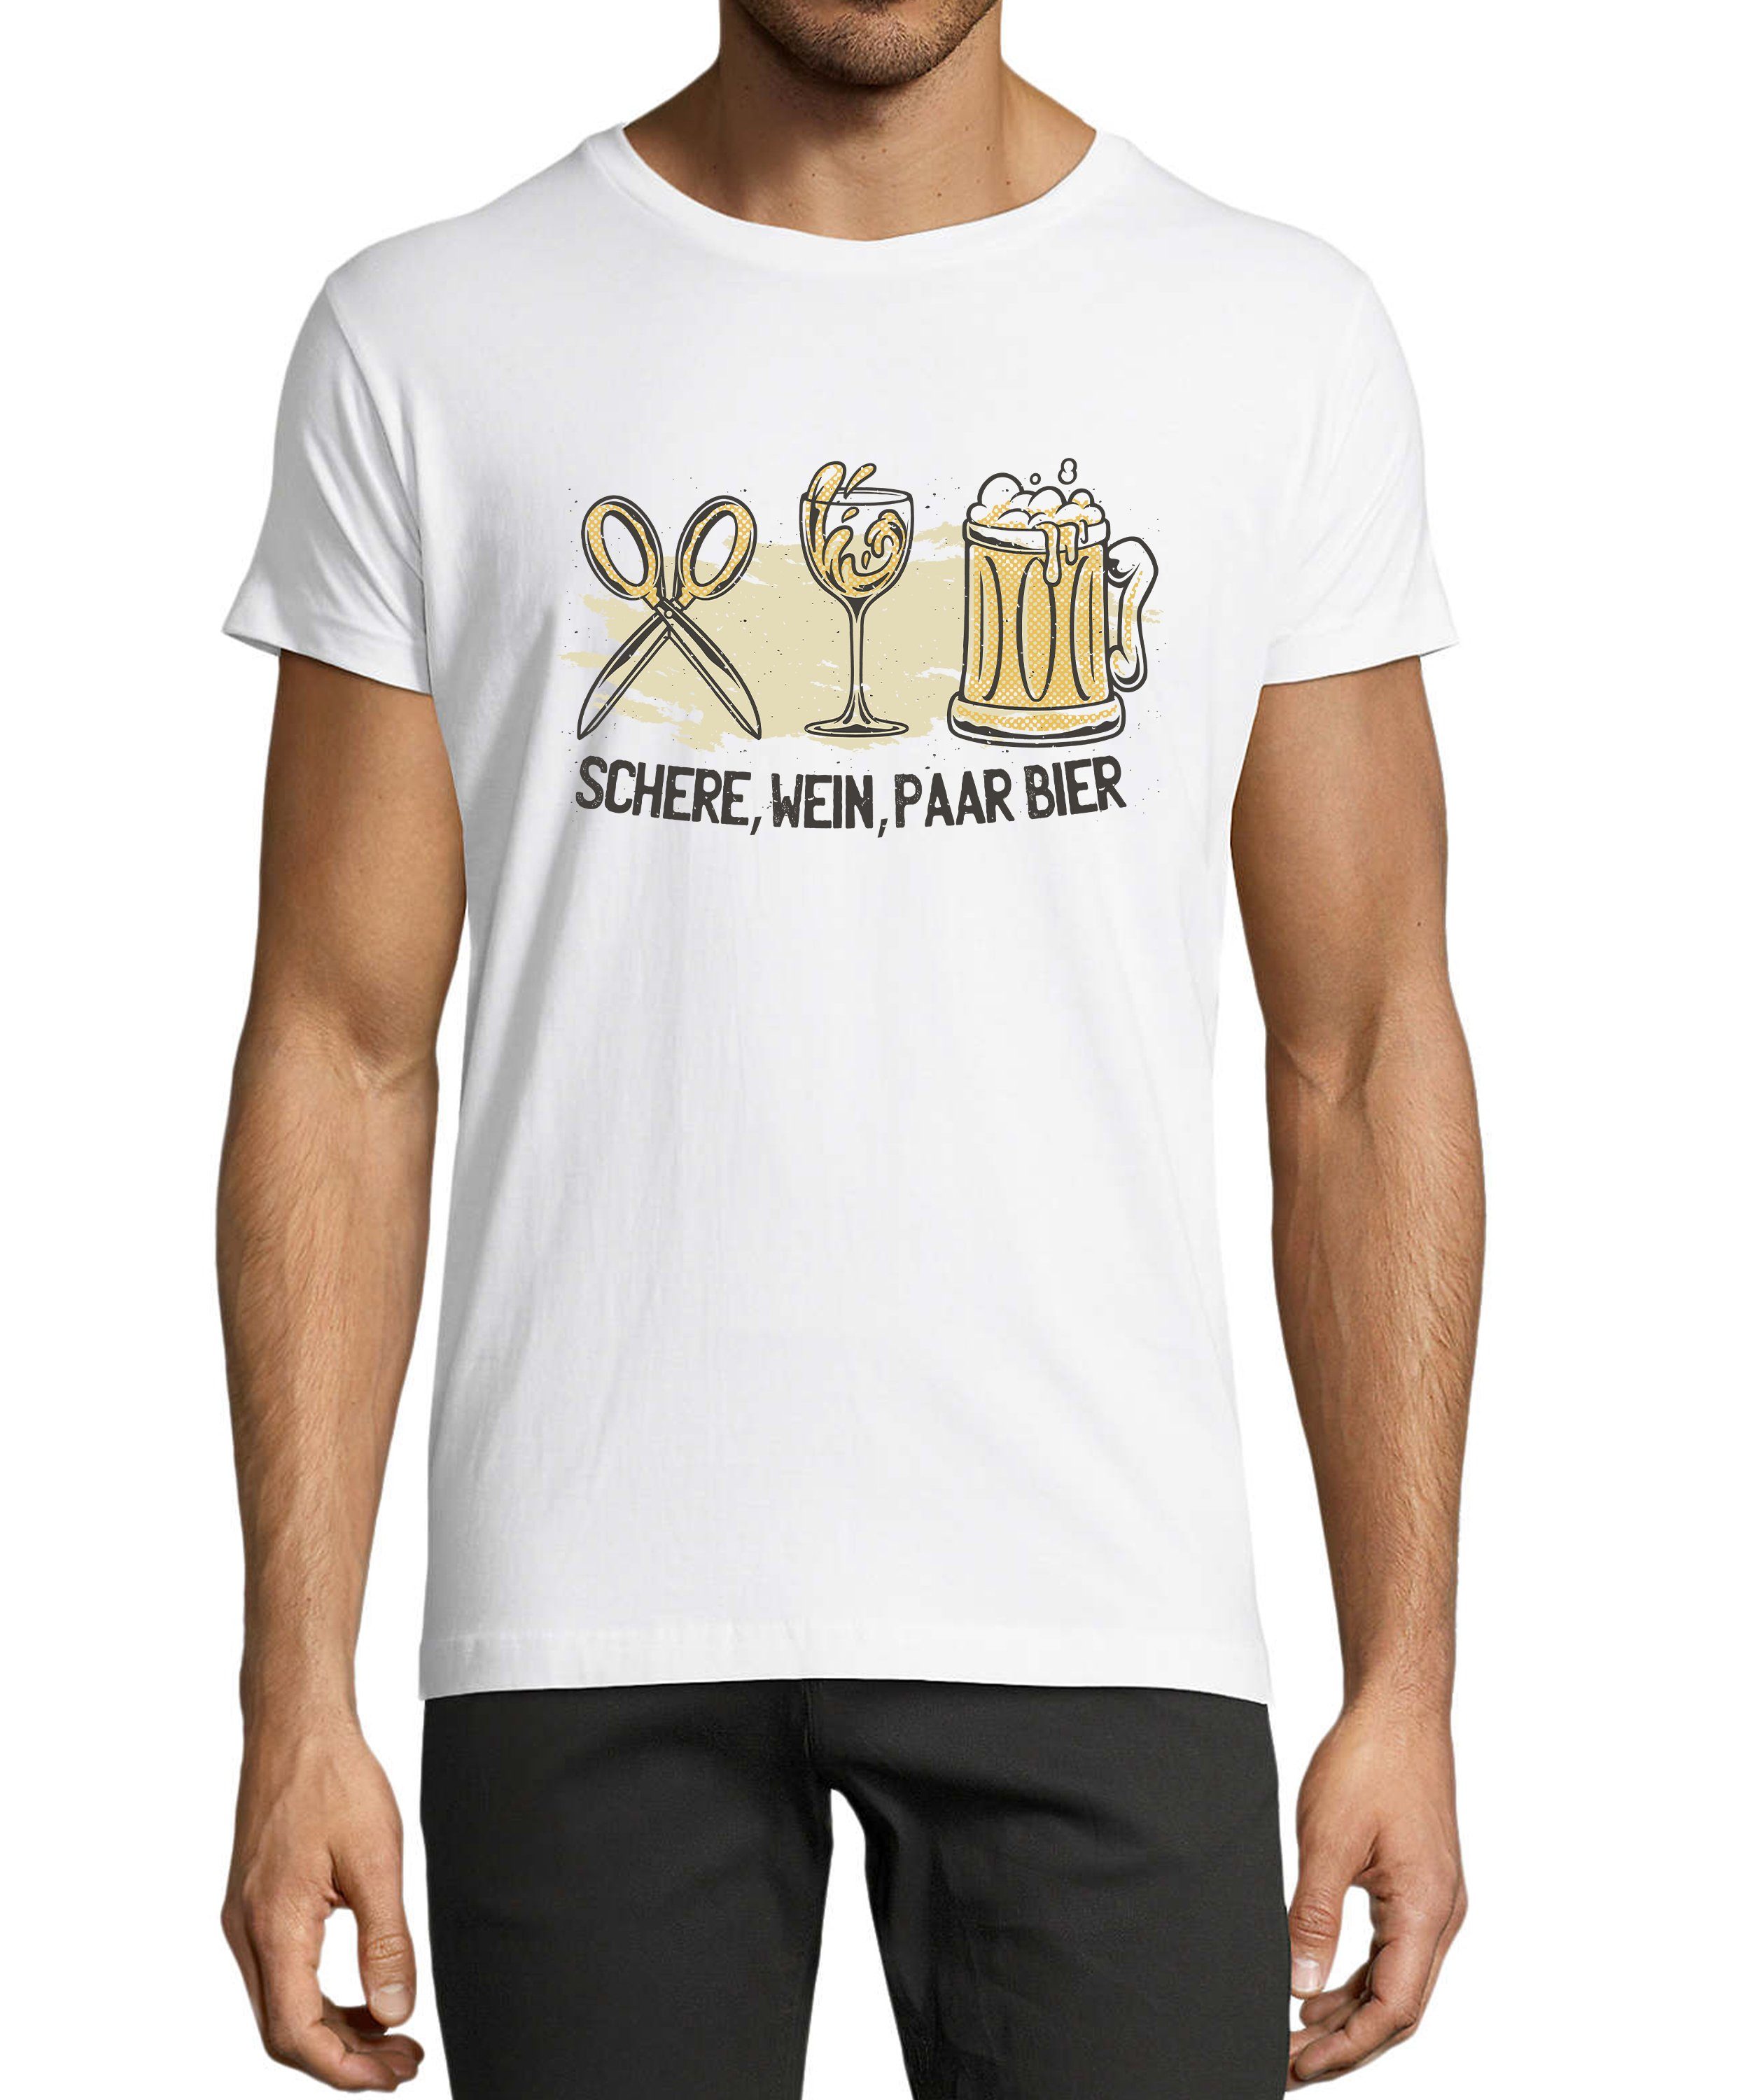 MyDesign24 T-Shirt Herren Sprüche Shirt - Trinkshirt Schere, Wein, Paar Bier Baumwollshirt mit Aufdruck Regular Fit, i321 weiss | Trachtenshirts